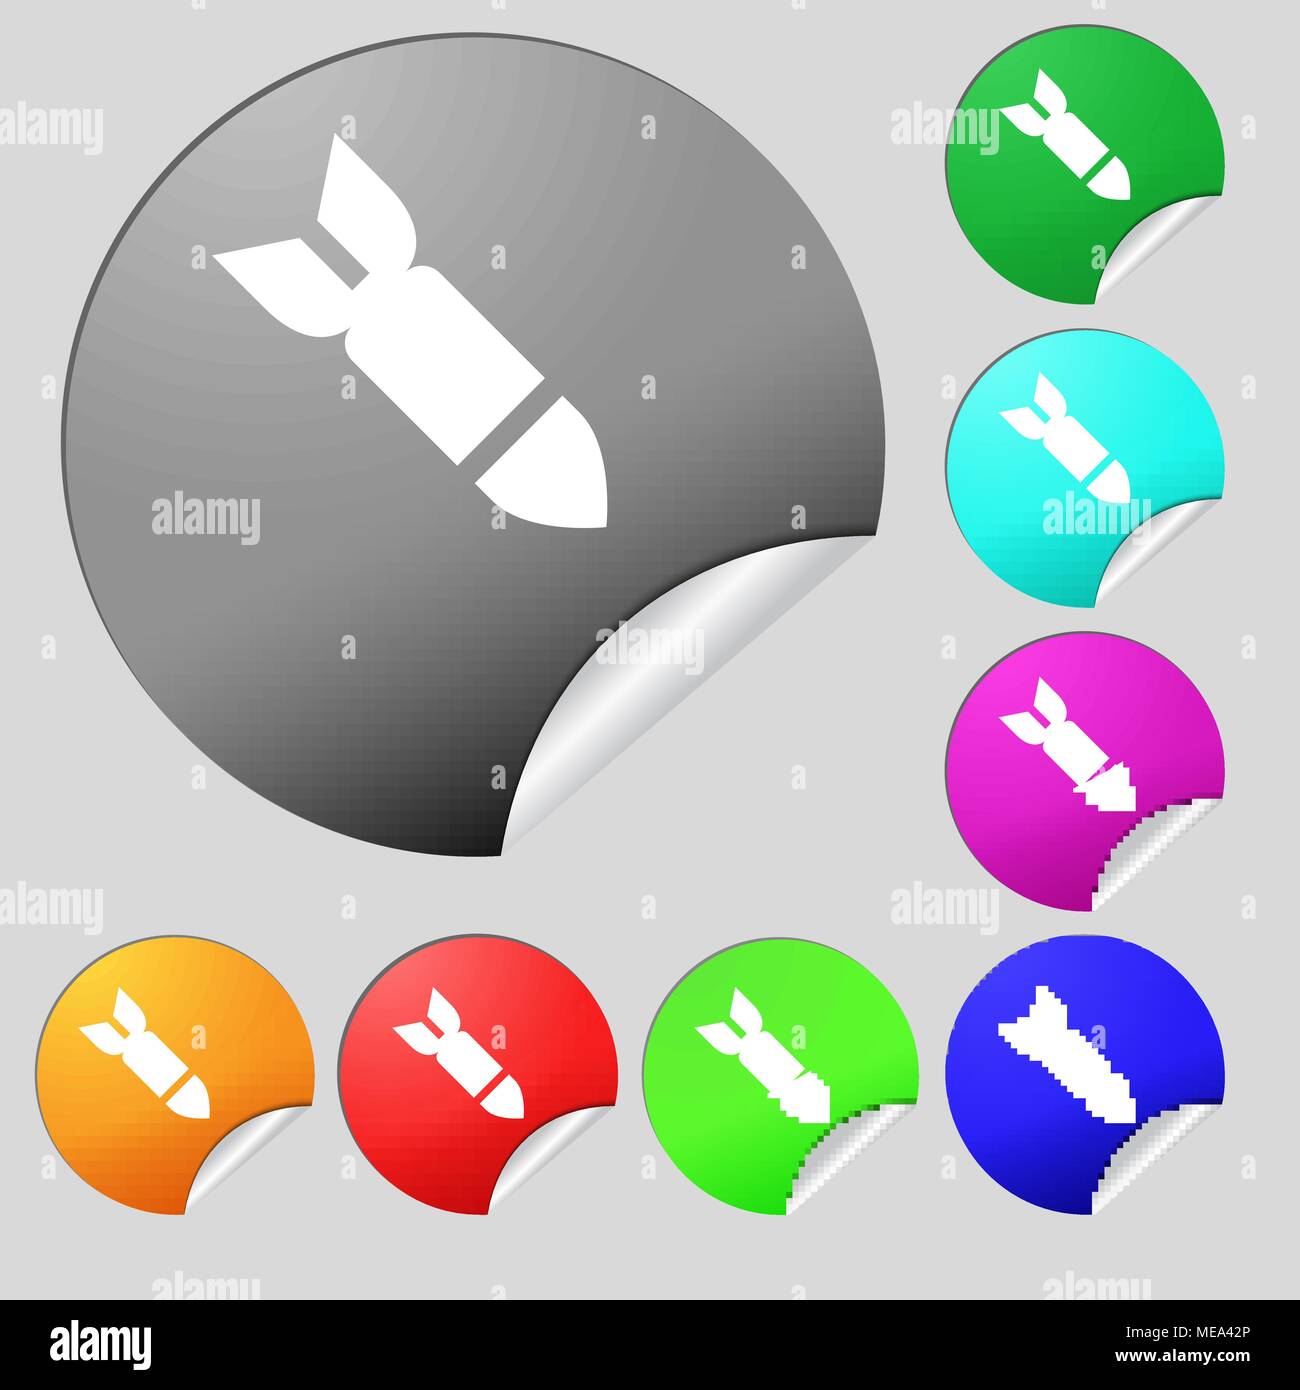 Rakete Rakete Waffensymbol unterzeichnen. Satz von acht bunte runde Buttons, Aufkleber. Vector Illustration Stock Vektor